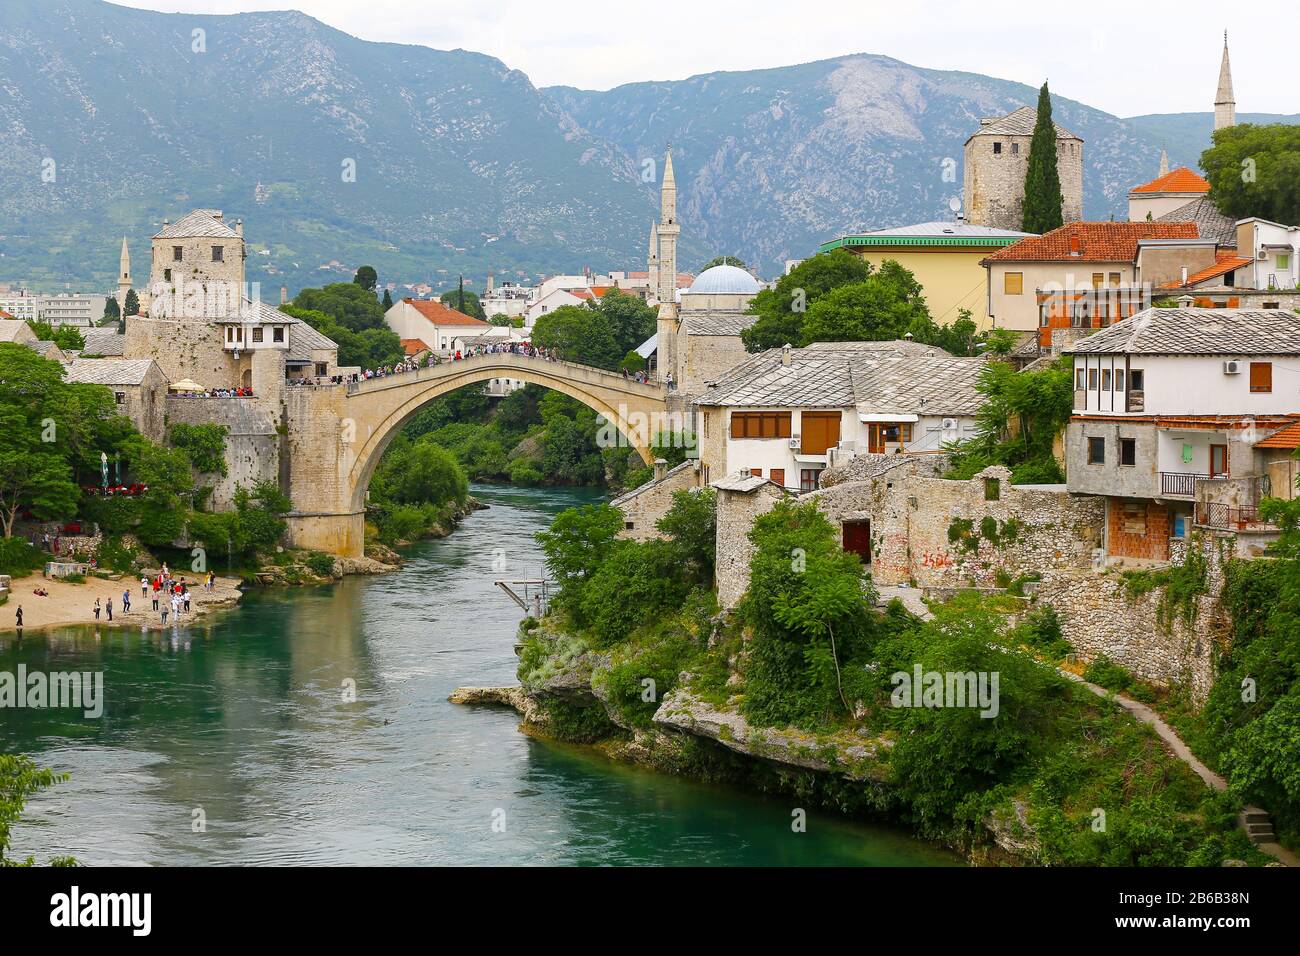 Stari Most ou Old Bridge, également connu sous le nom de Mostar Bridge, est un pont ottoman reconstruit du XVIe siècle dans la ville de Mostar en Bosnie-Herzégovine Banque D'Images